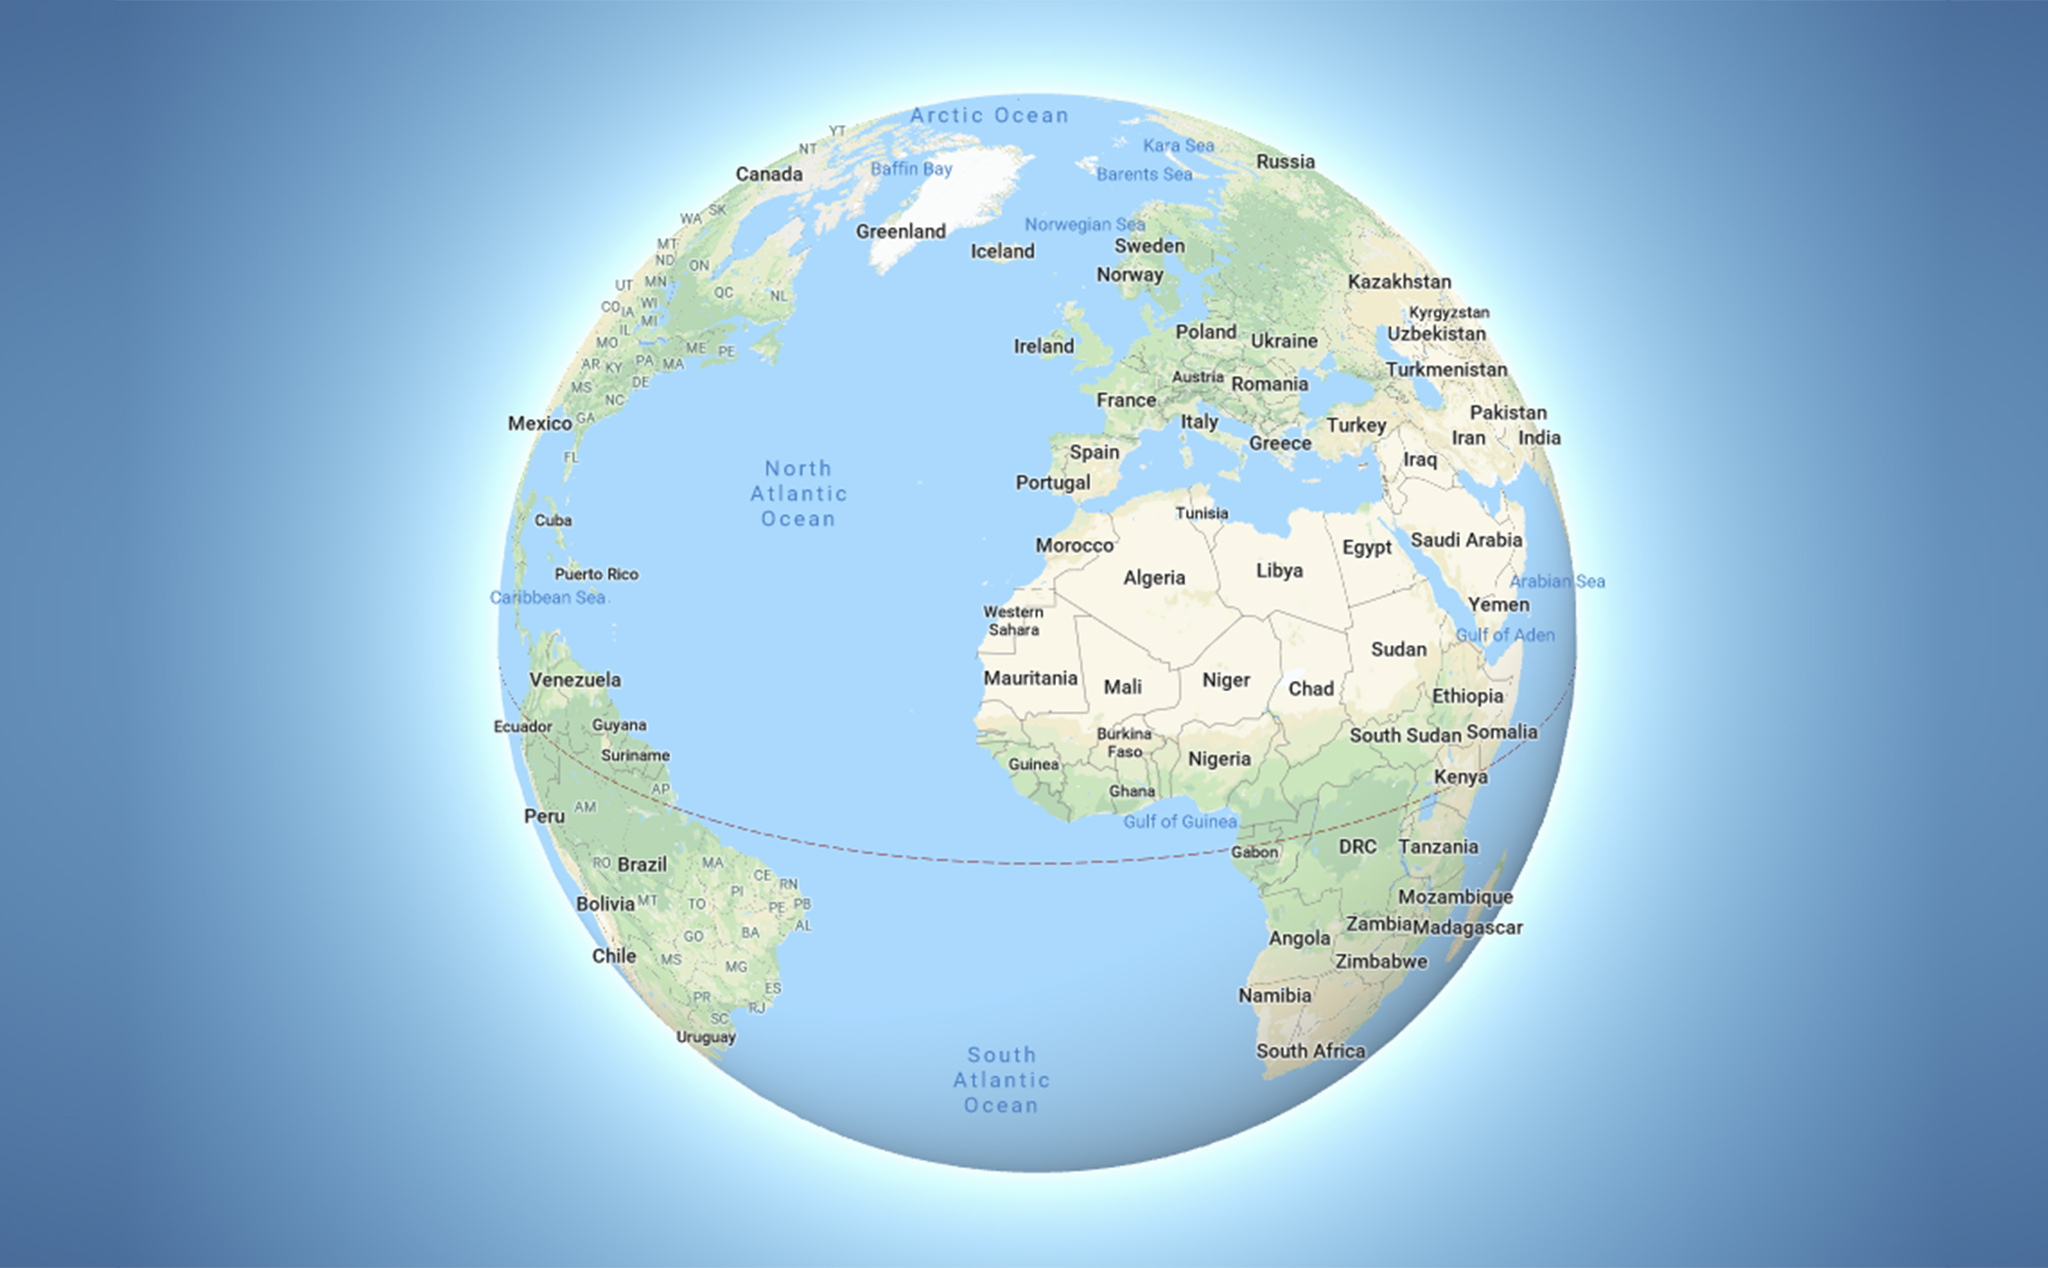 Chế độ 3D Globe trên Google Maps sẽ cho phép bạn đặt chân lên những vùng đất xa xôi mà không cần phải rời khỏi nhà. Với giao diện 3D sinh động, bạn có thể xem thế giới và các địa danh nổi tiếng theo cách mới lạ hơn bao giờ hết. Hãy tải ngay ứng dụng và trải nghiệm sự tuyệt vời của chế độ 3D Globe trên Google Maps nhé!